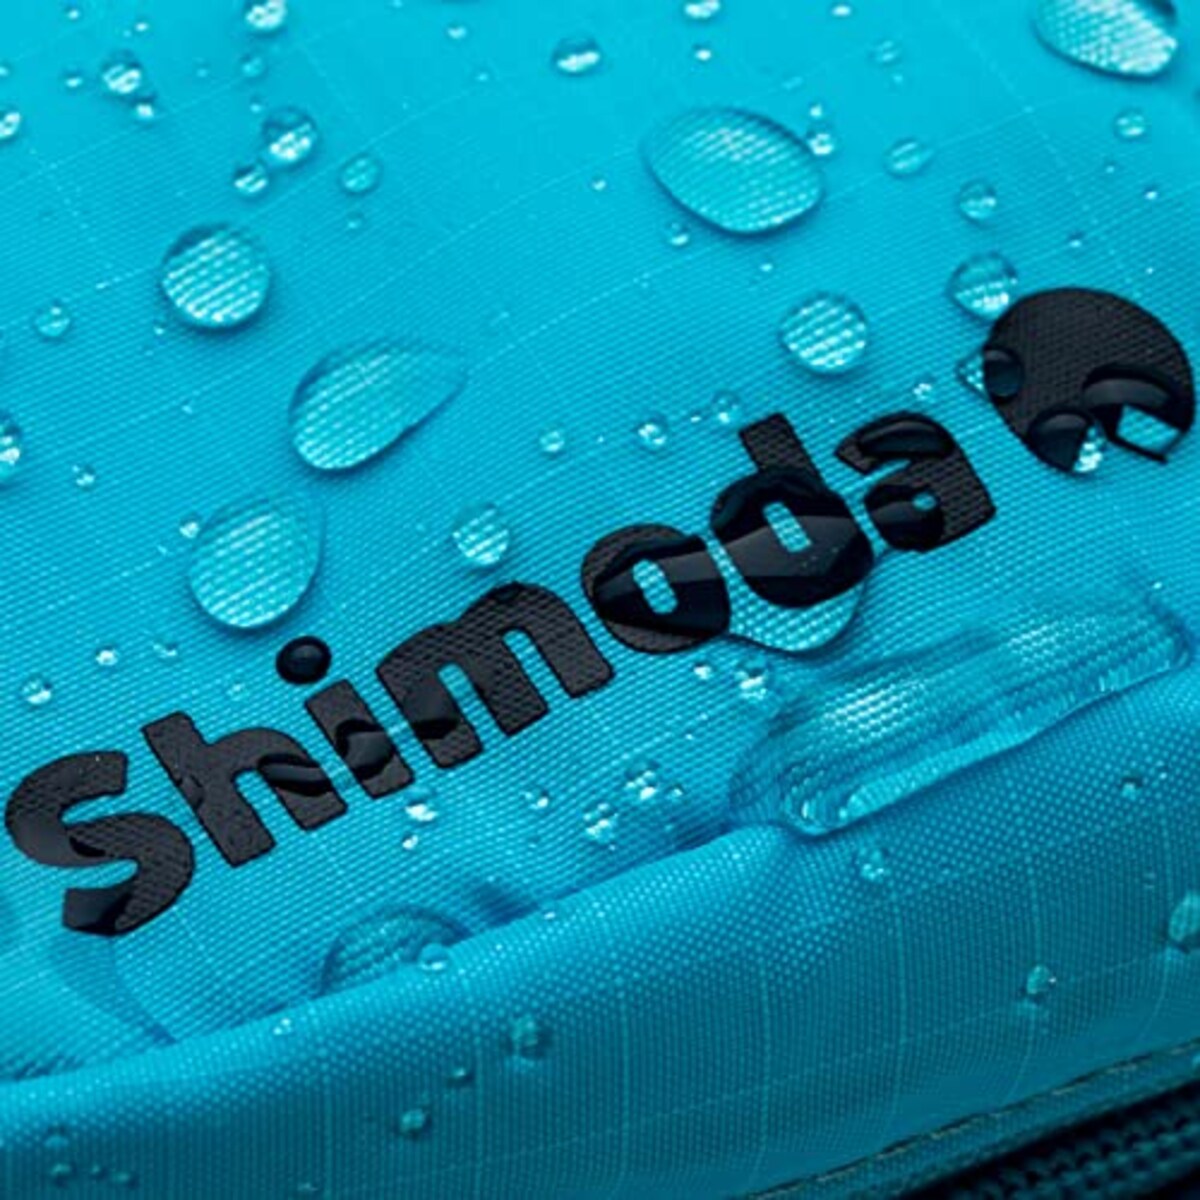  [Shimoda] カメラケース Shimoda Accessory Case リバーブルー画像5 